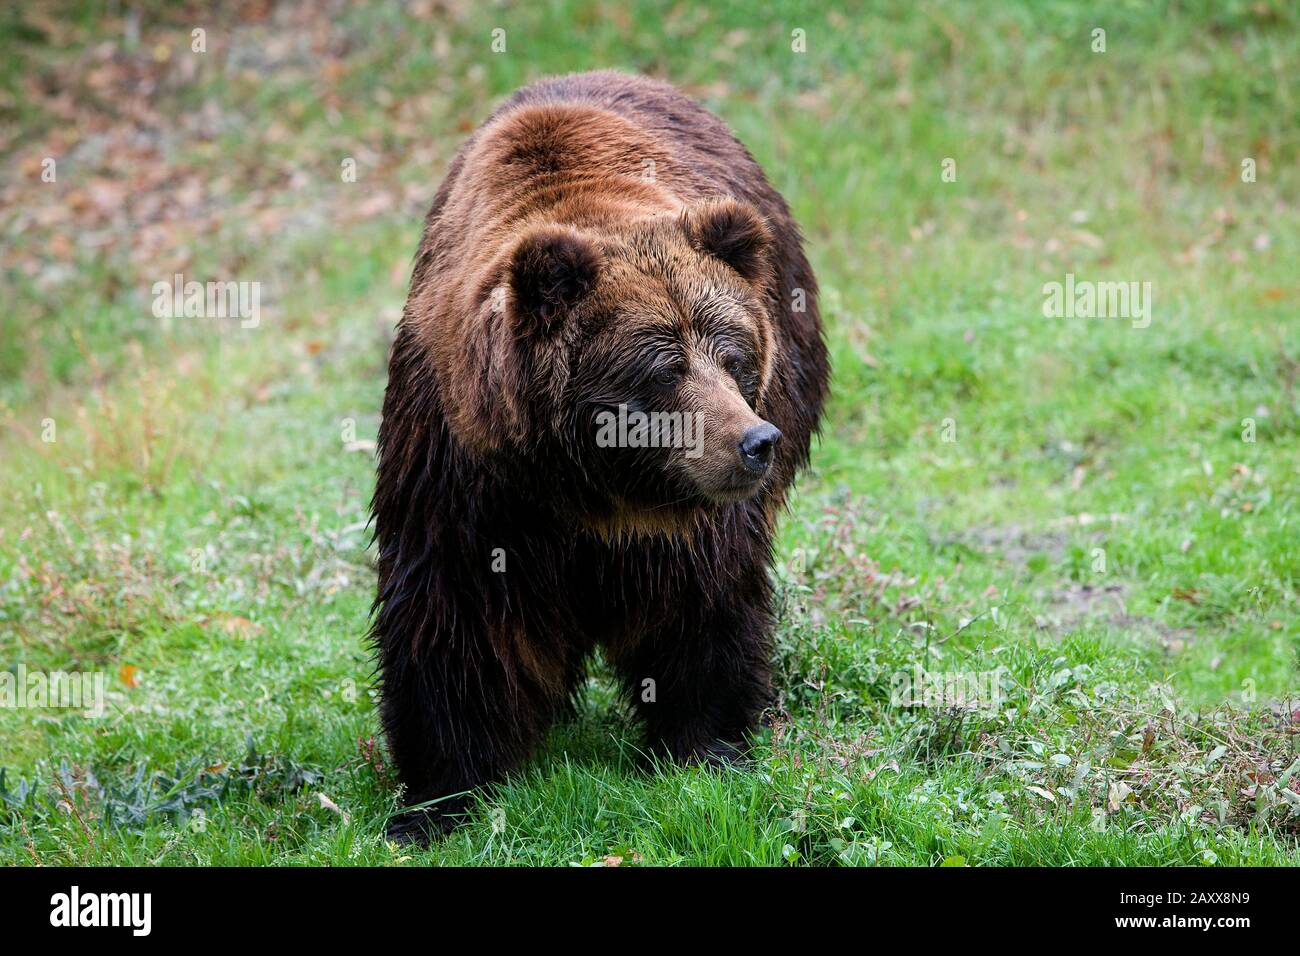 Ours brun, ursus arctos, Adulte debout sur herbe Banque D'Images